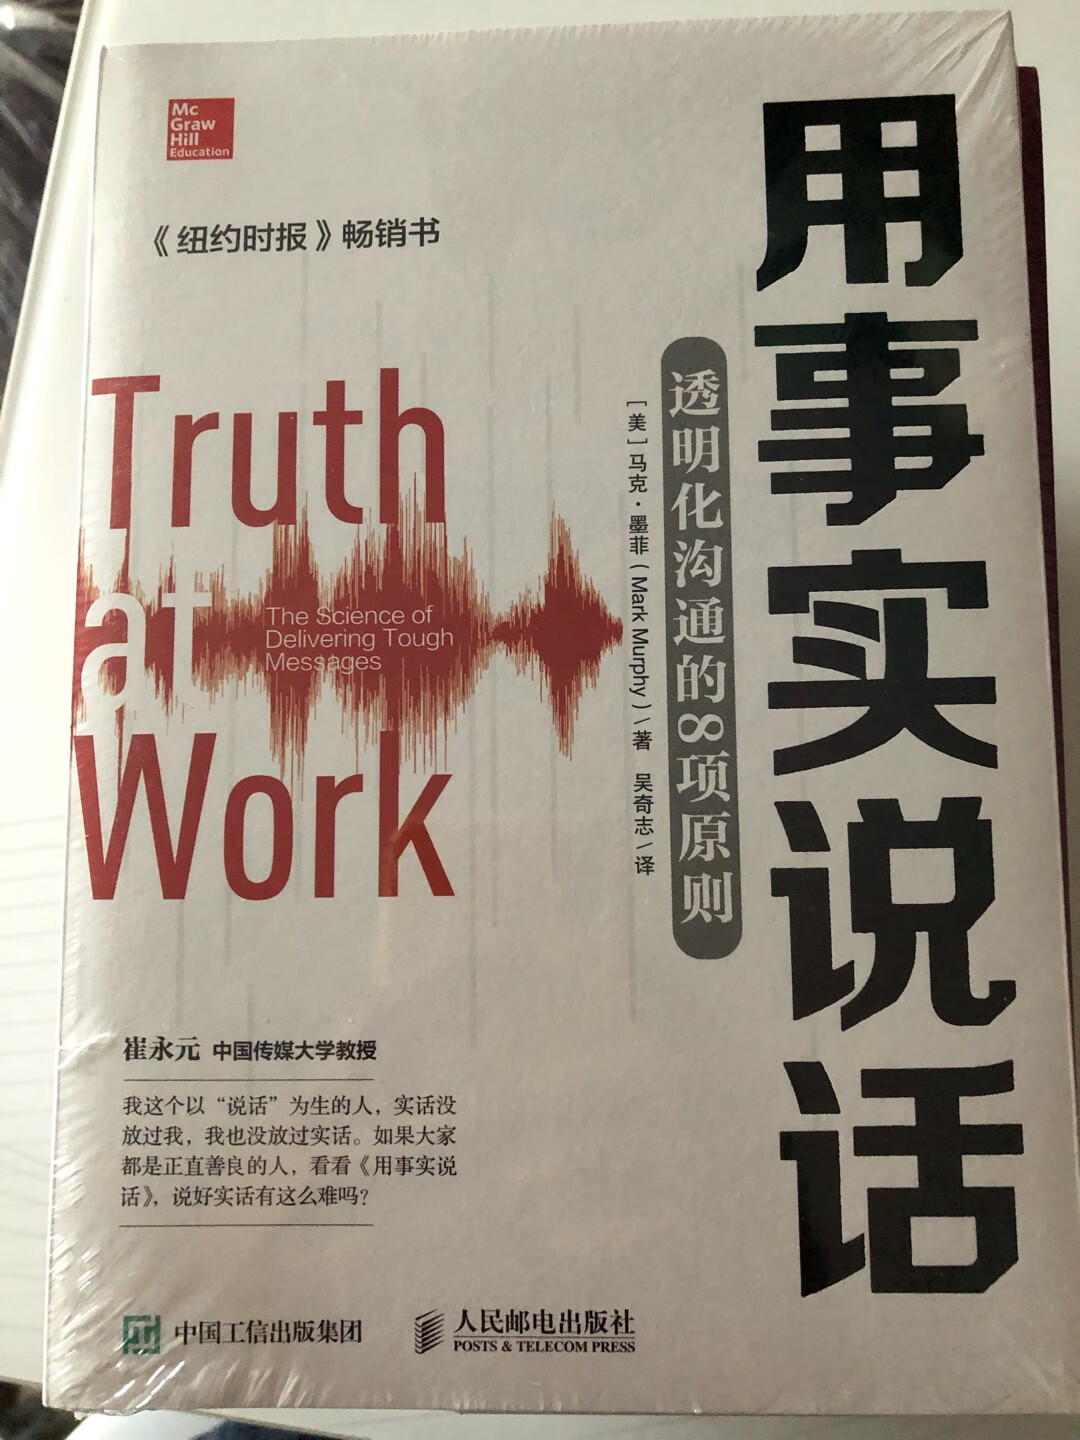 这本书是看~推荐的，樊登老师推荐的有时间看看吧！